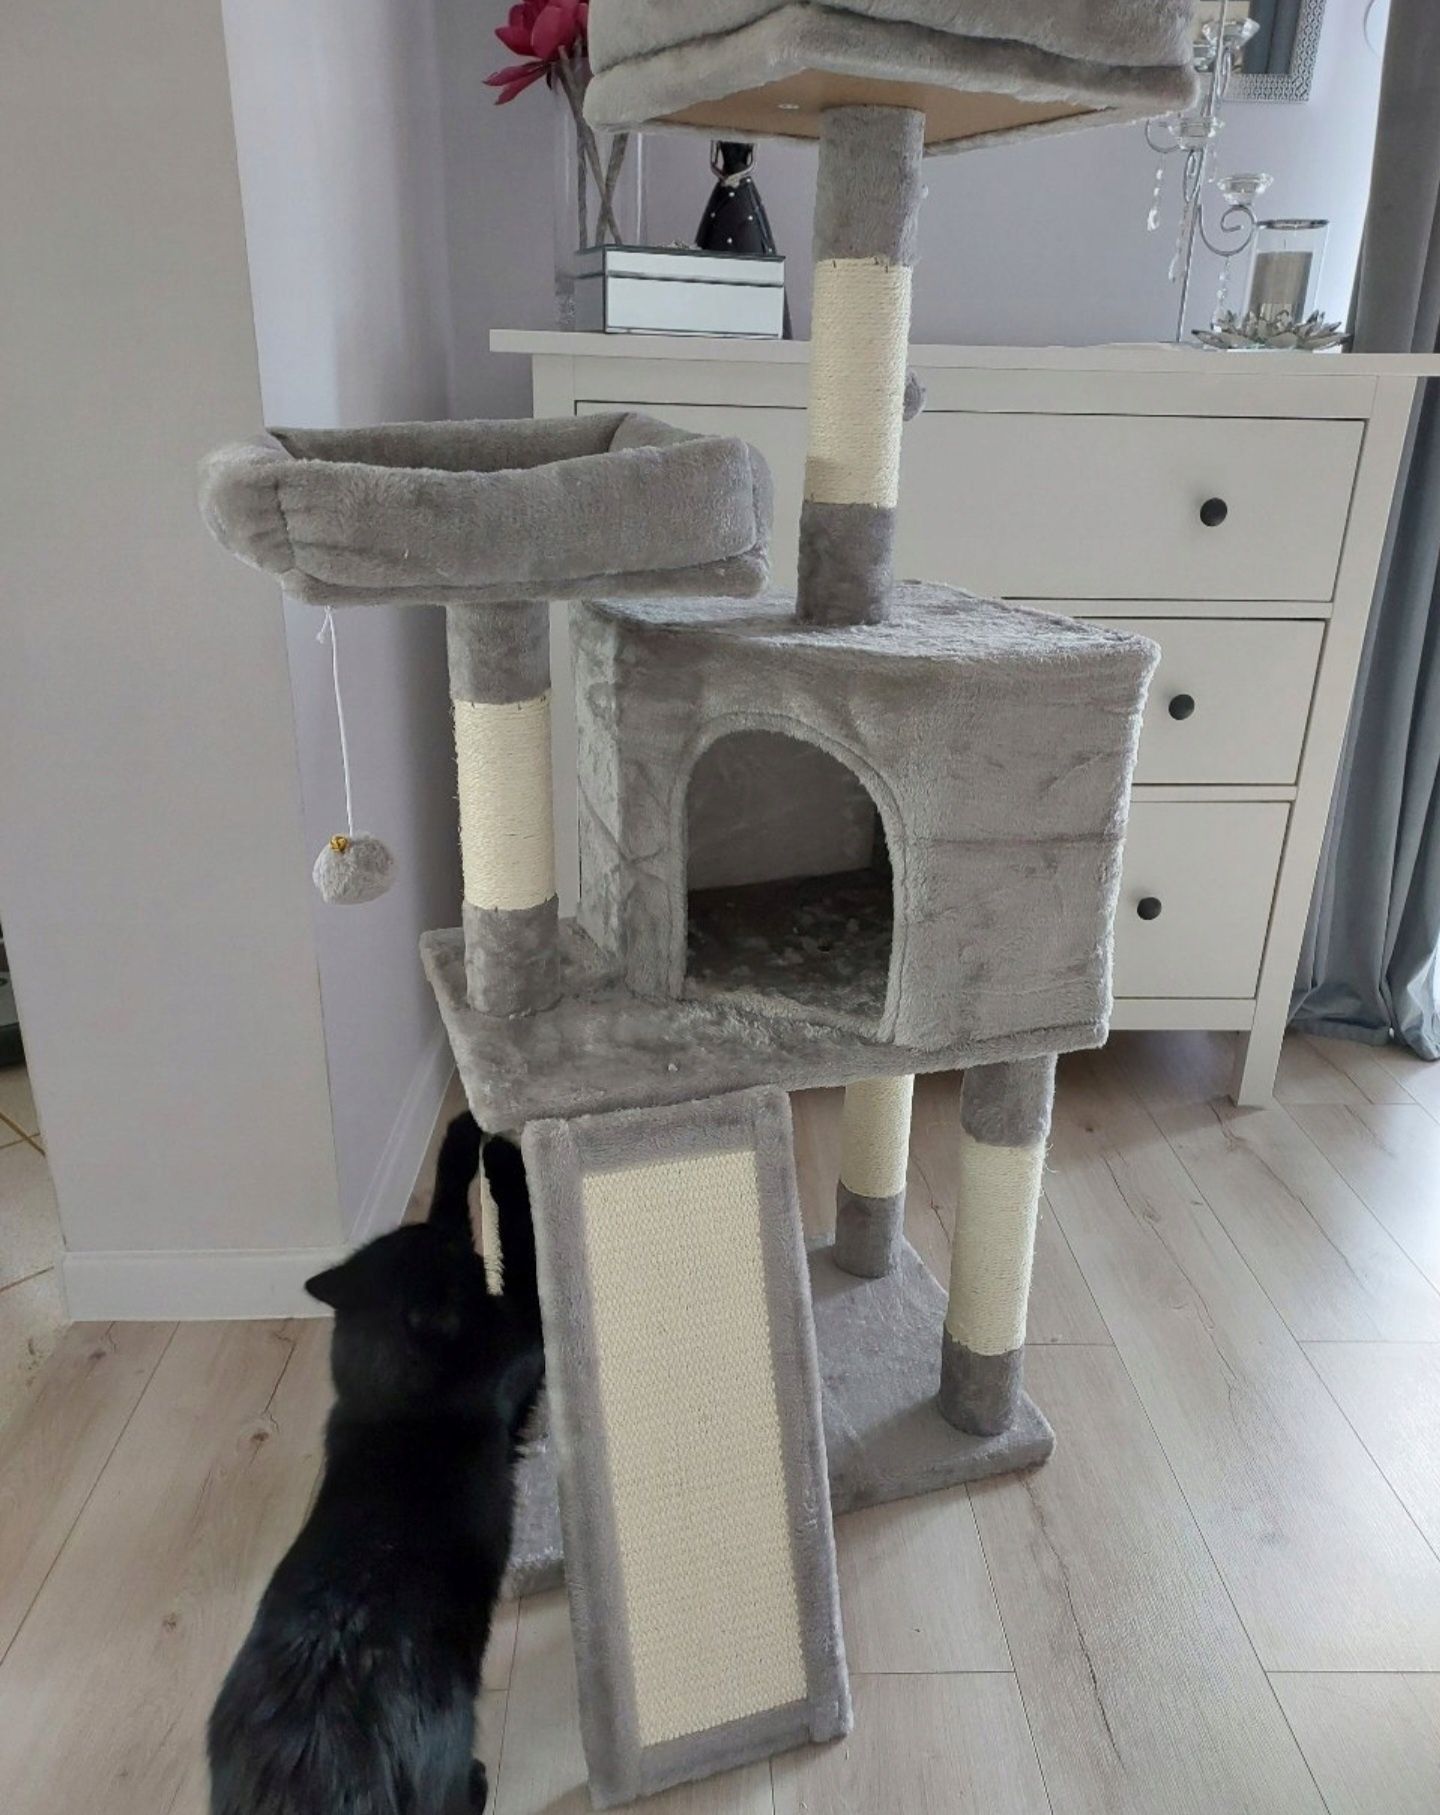 NOWY DRPAPAK dla kota wysoka JAKOŚĆ + domek legowisko posłanie budka